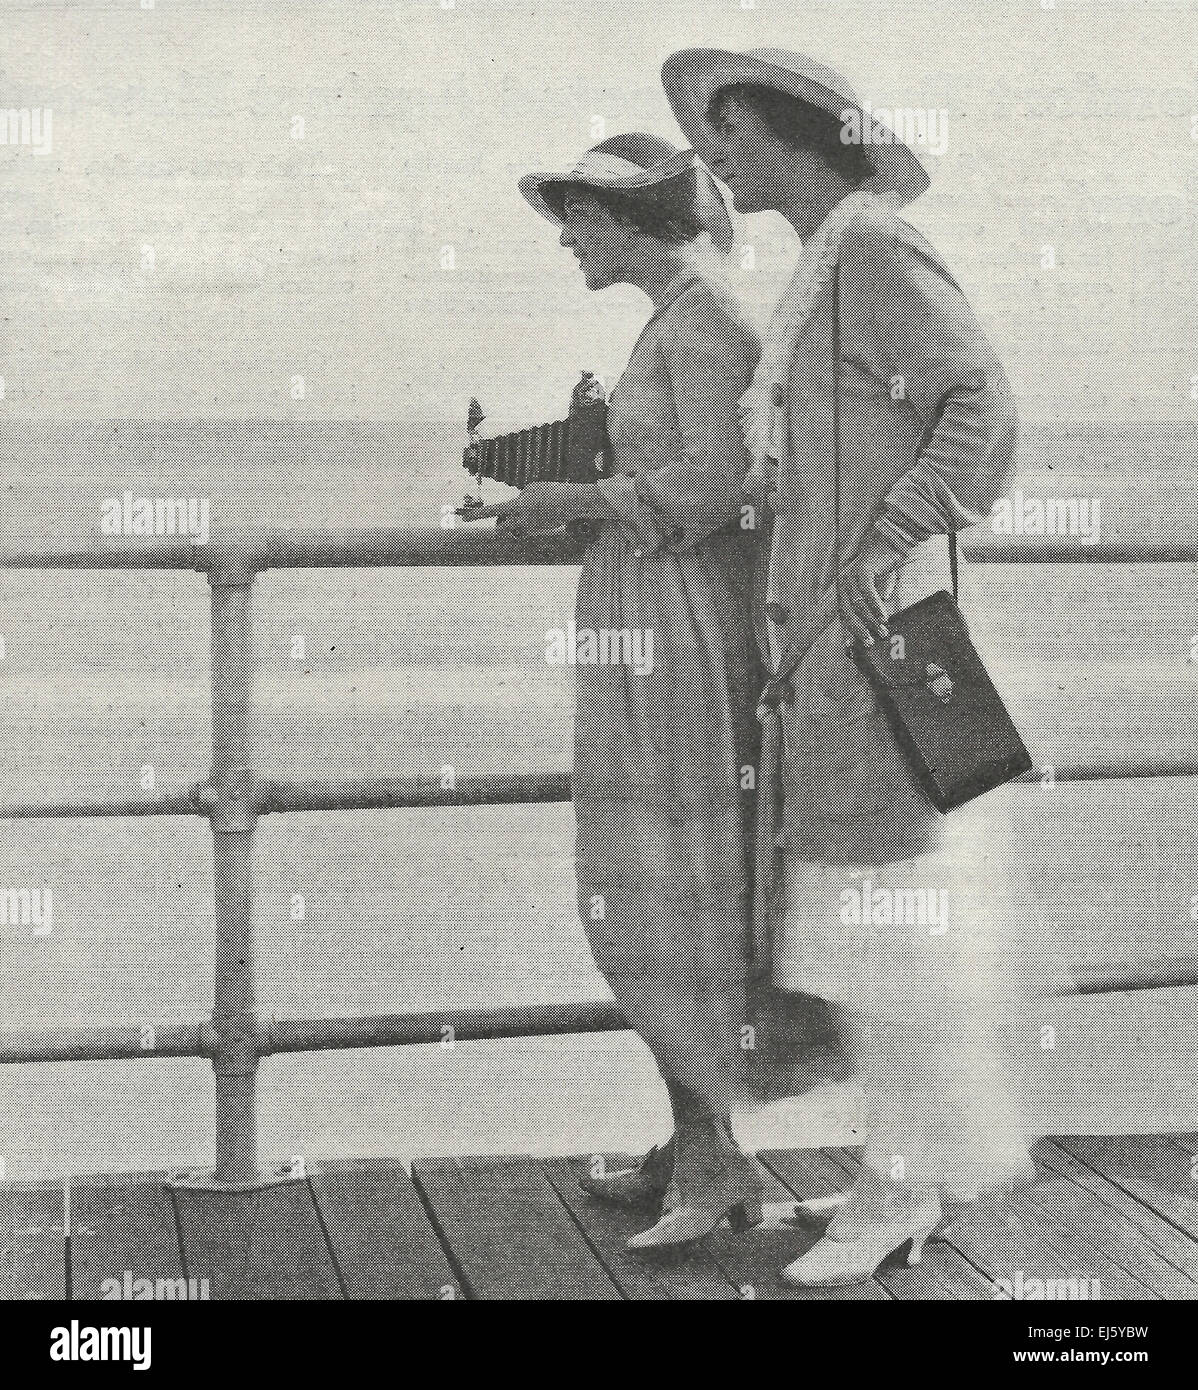 Deux dames de tir avec des appareils Kodak, vers 1916 Banque D'Images